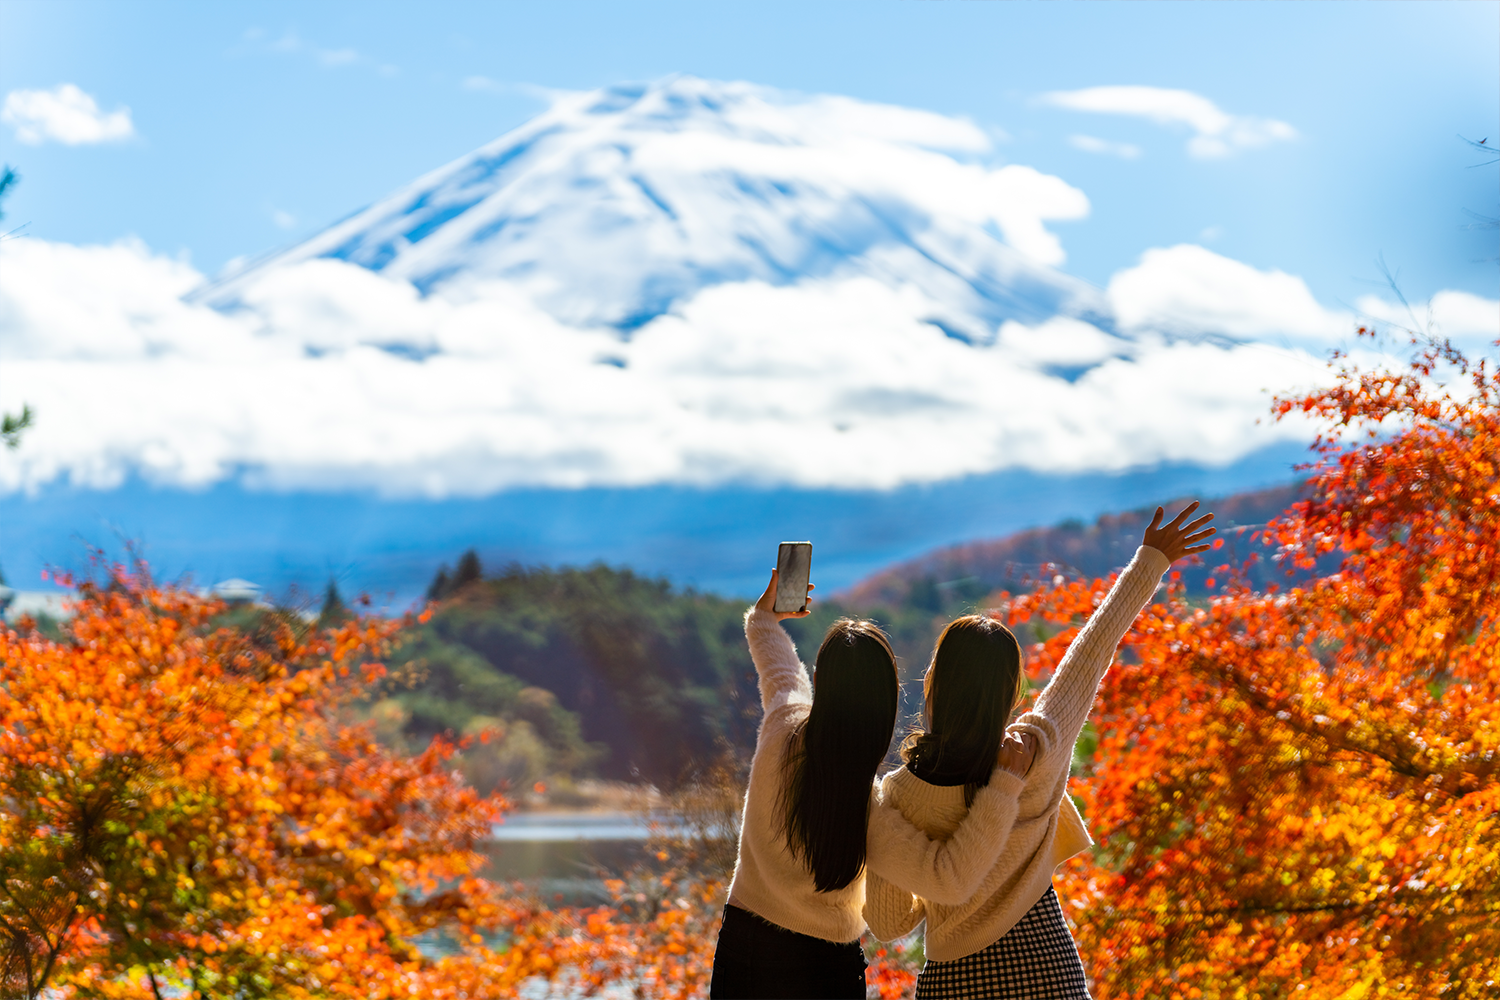 Two women take a selfie in front of Mt. Fuji.